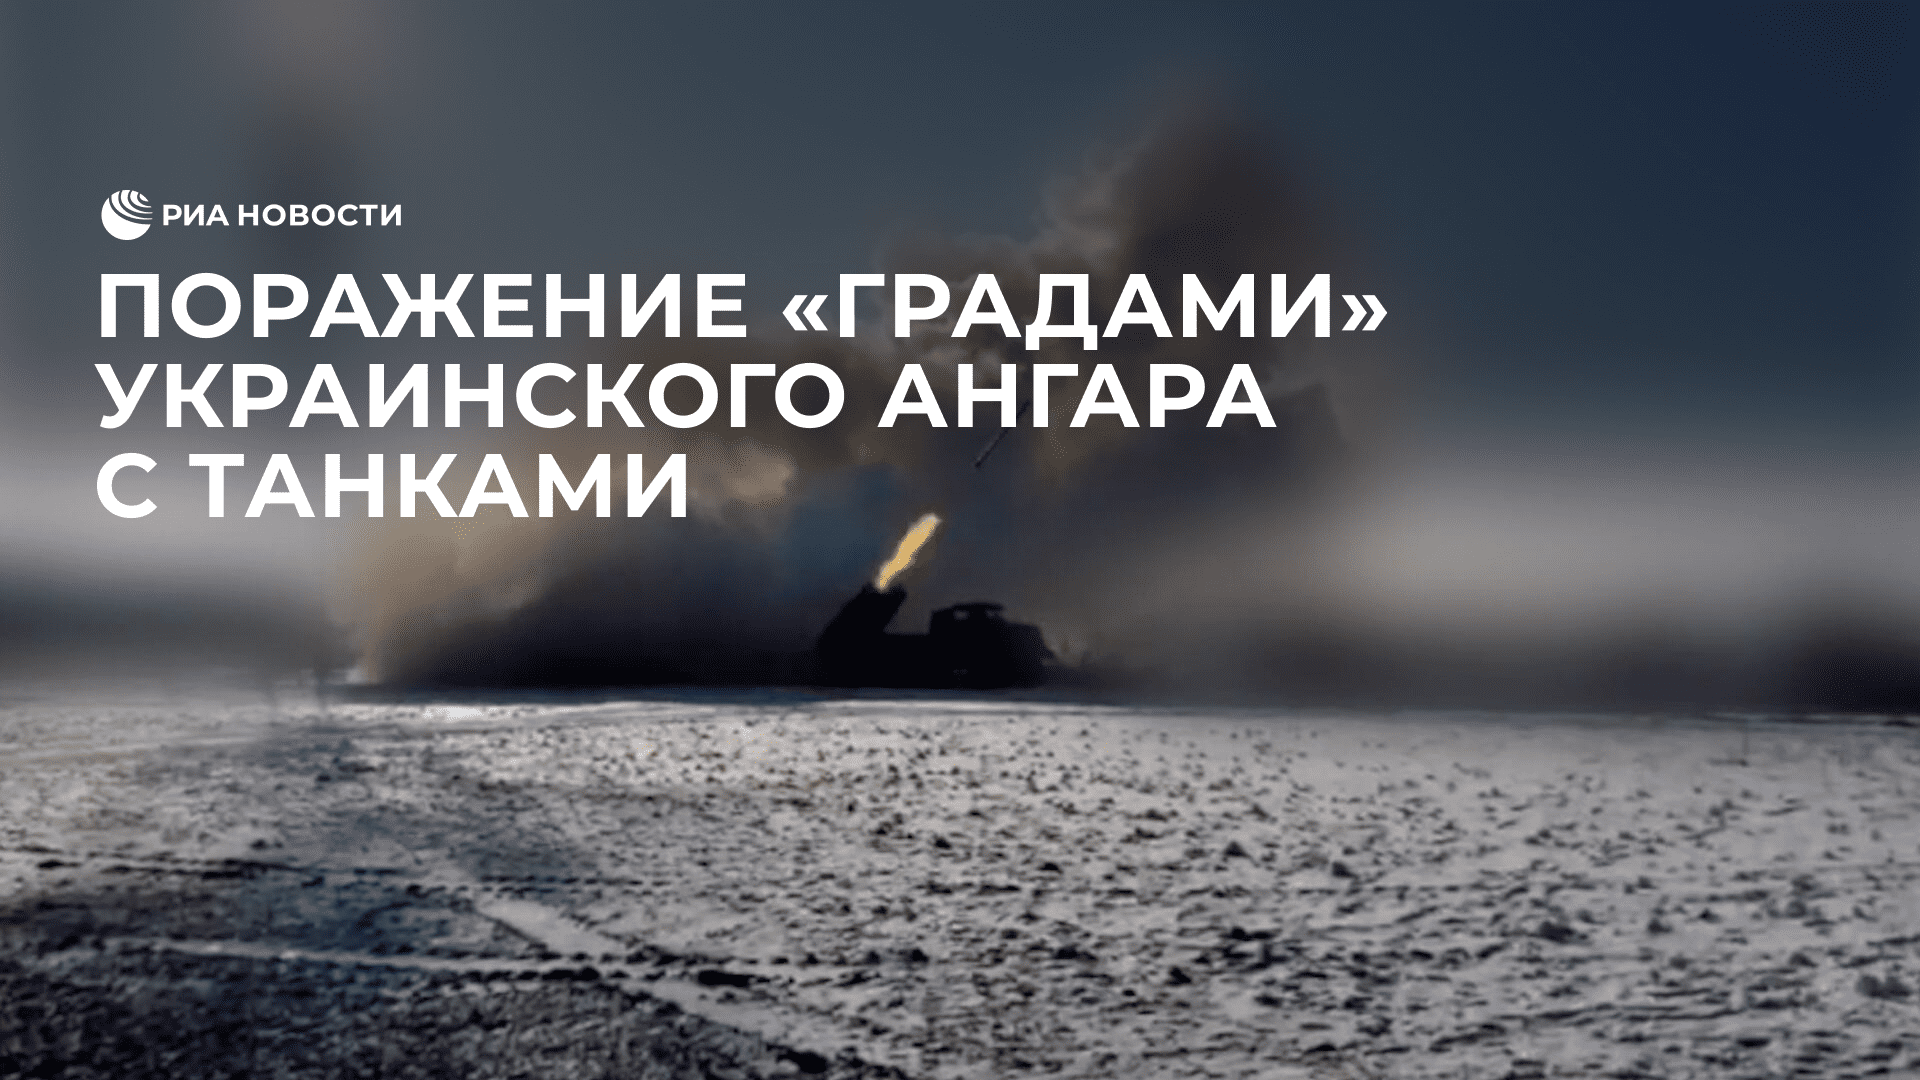 Поражение "Градами" украинского ангара с танками